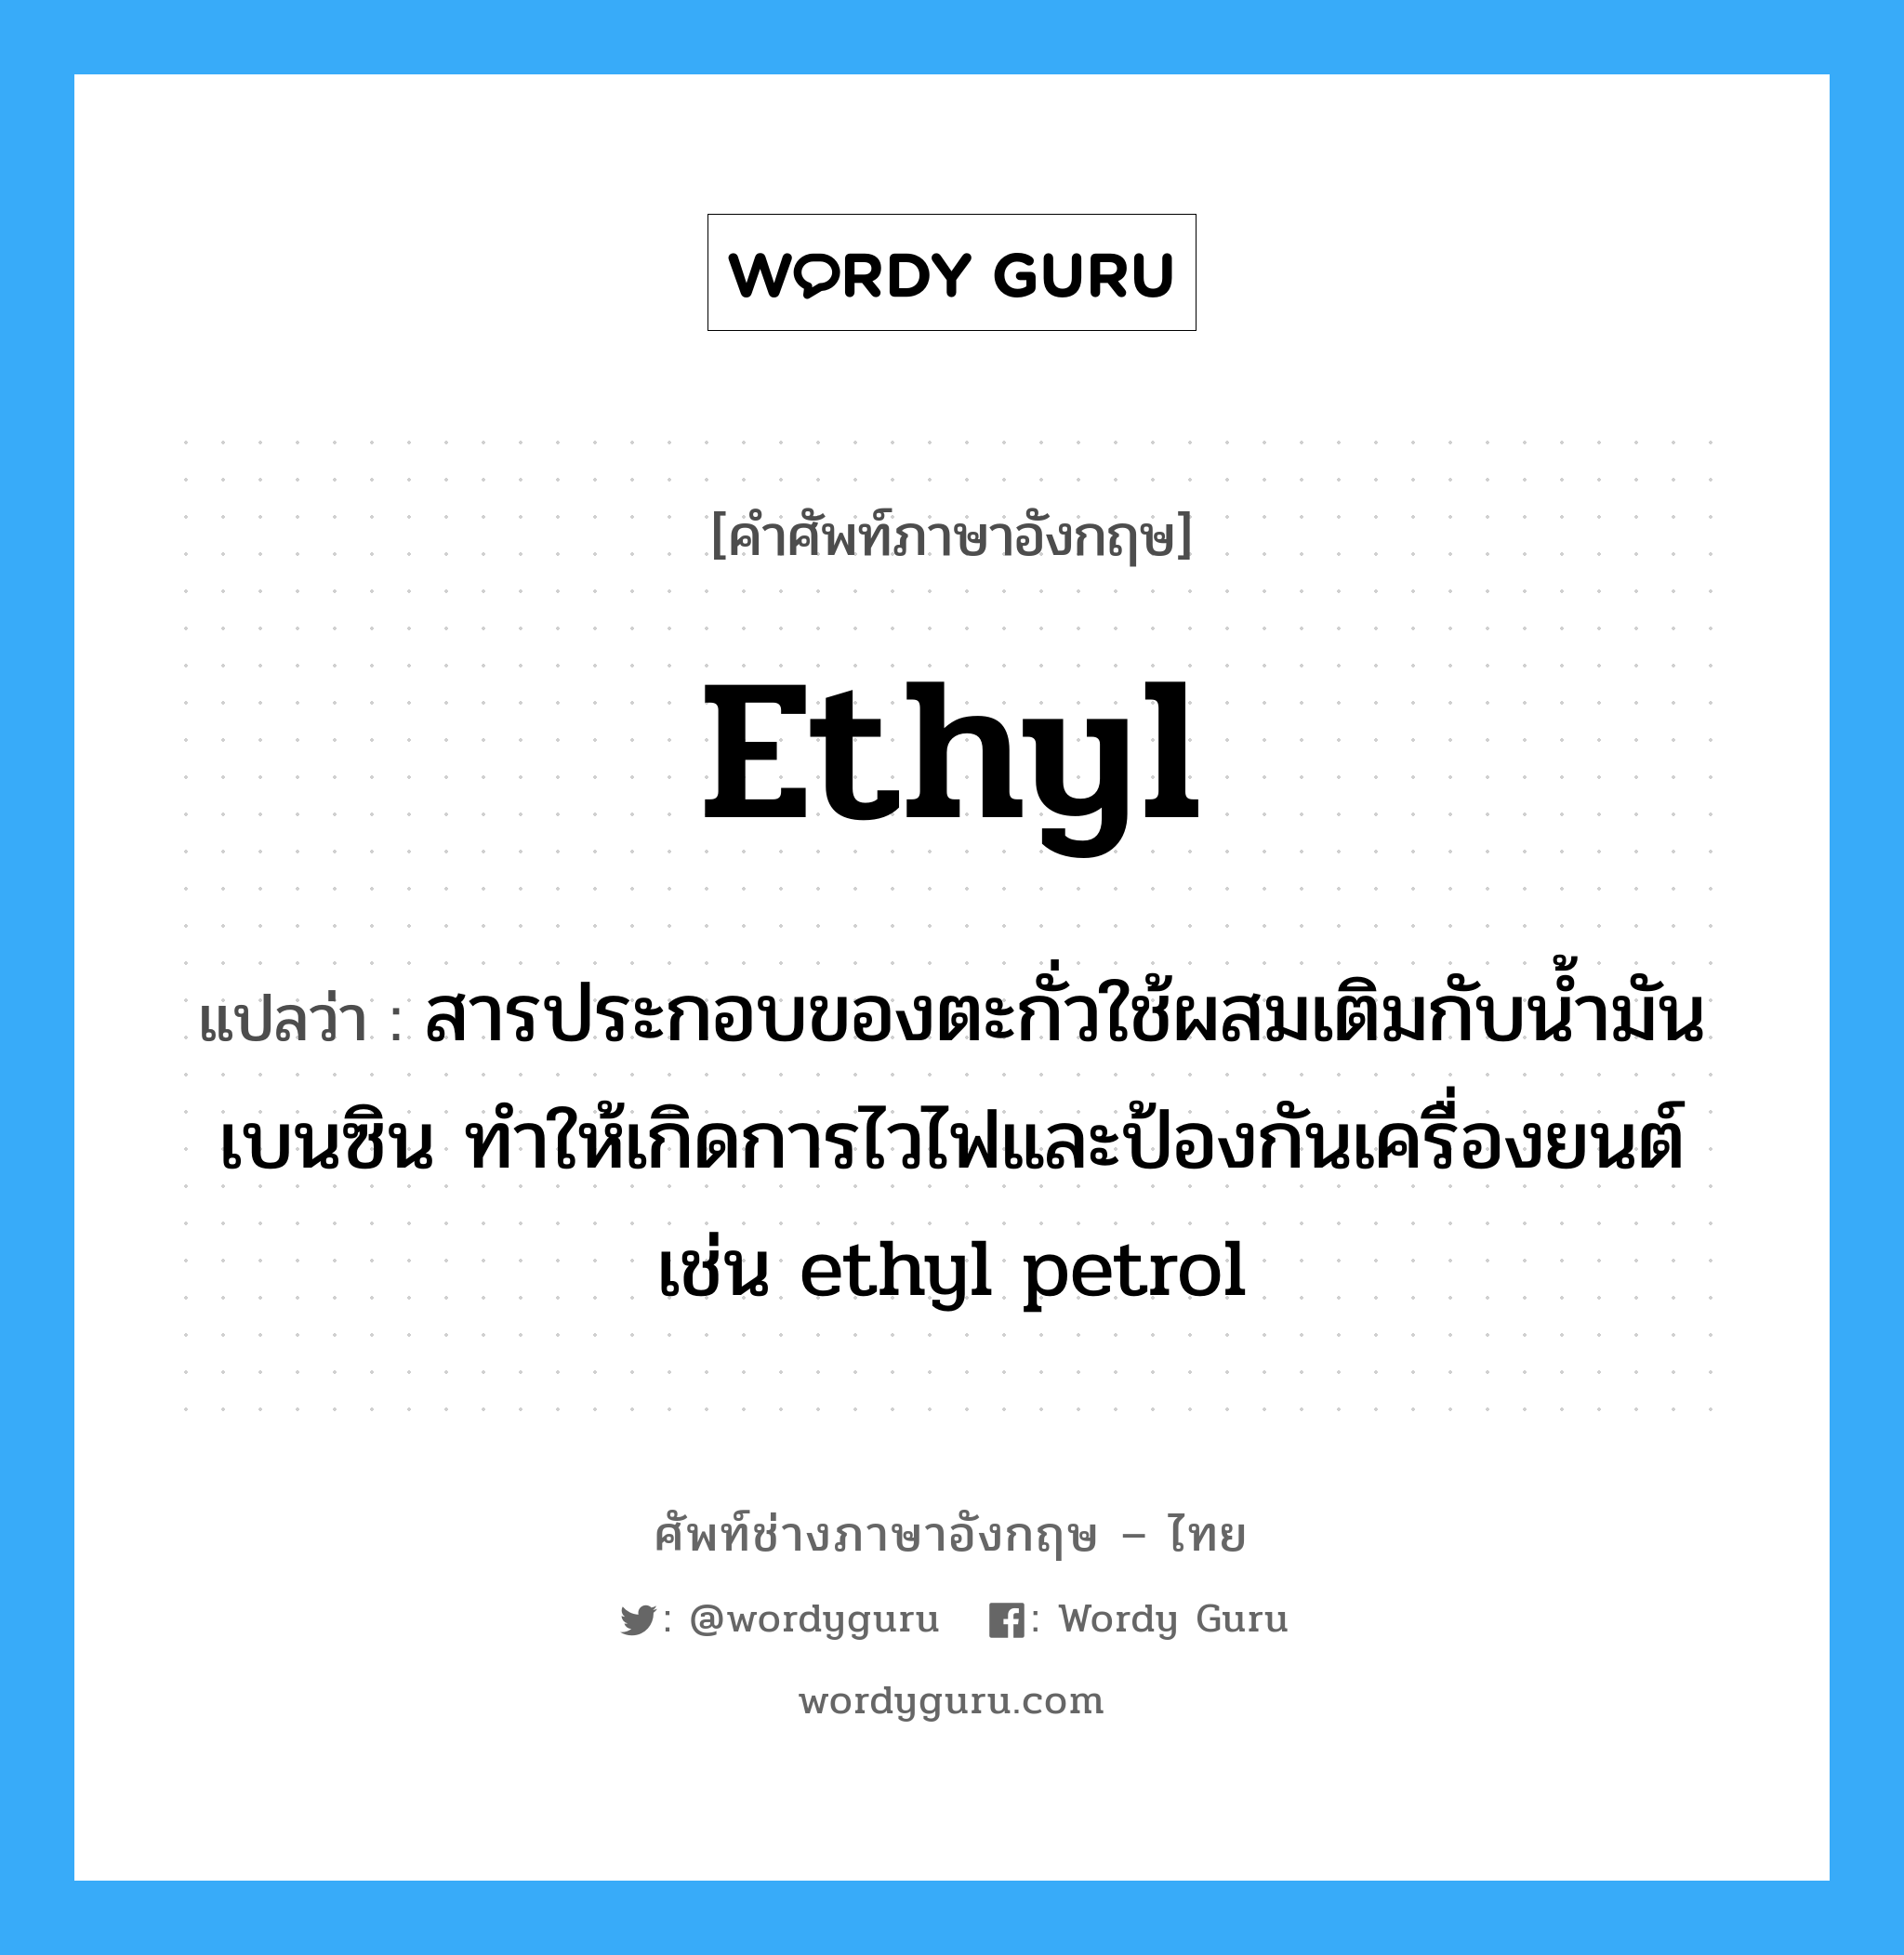 ethyl แปลว่า?, คำศัพท์ช่างภาษาอังกฤษ - ไทย ethyl คำศัพท์ภาษาอังกฤษ ethyl แปลว่า สารประกอบของตะกั่วใช้ผสมเติมกับน้ำมันเบนซิน ทำให้เกิดการไวไฟและป้องกันเครื่องยนต์ เช่น ethyl petrol